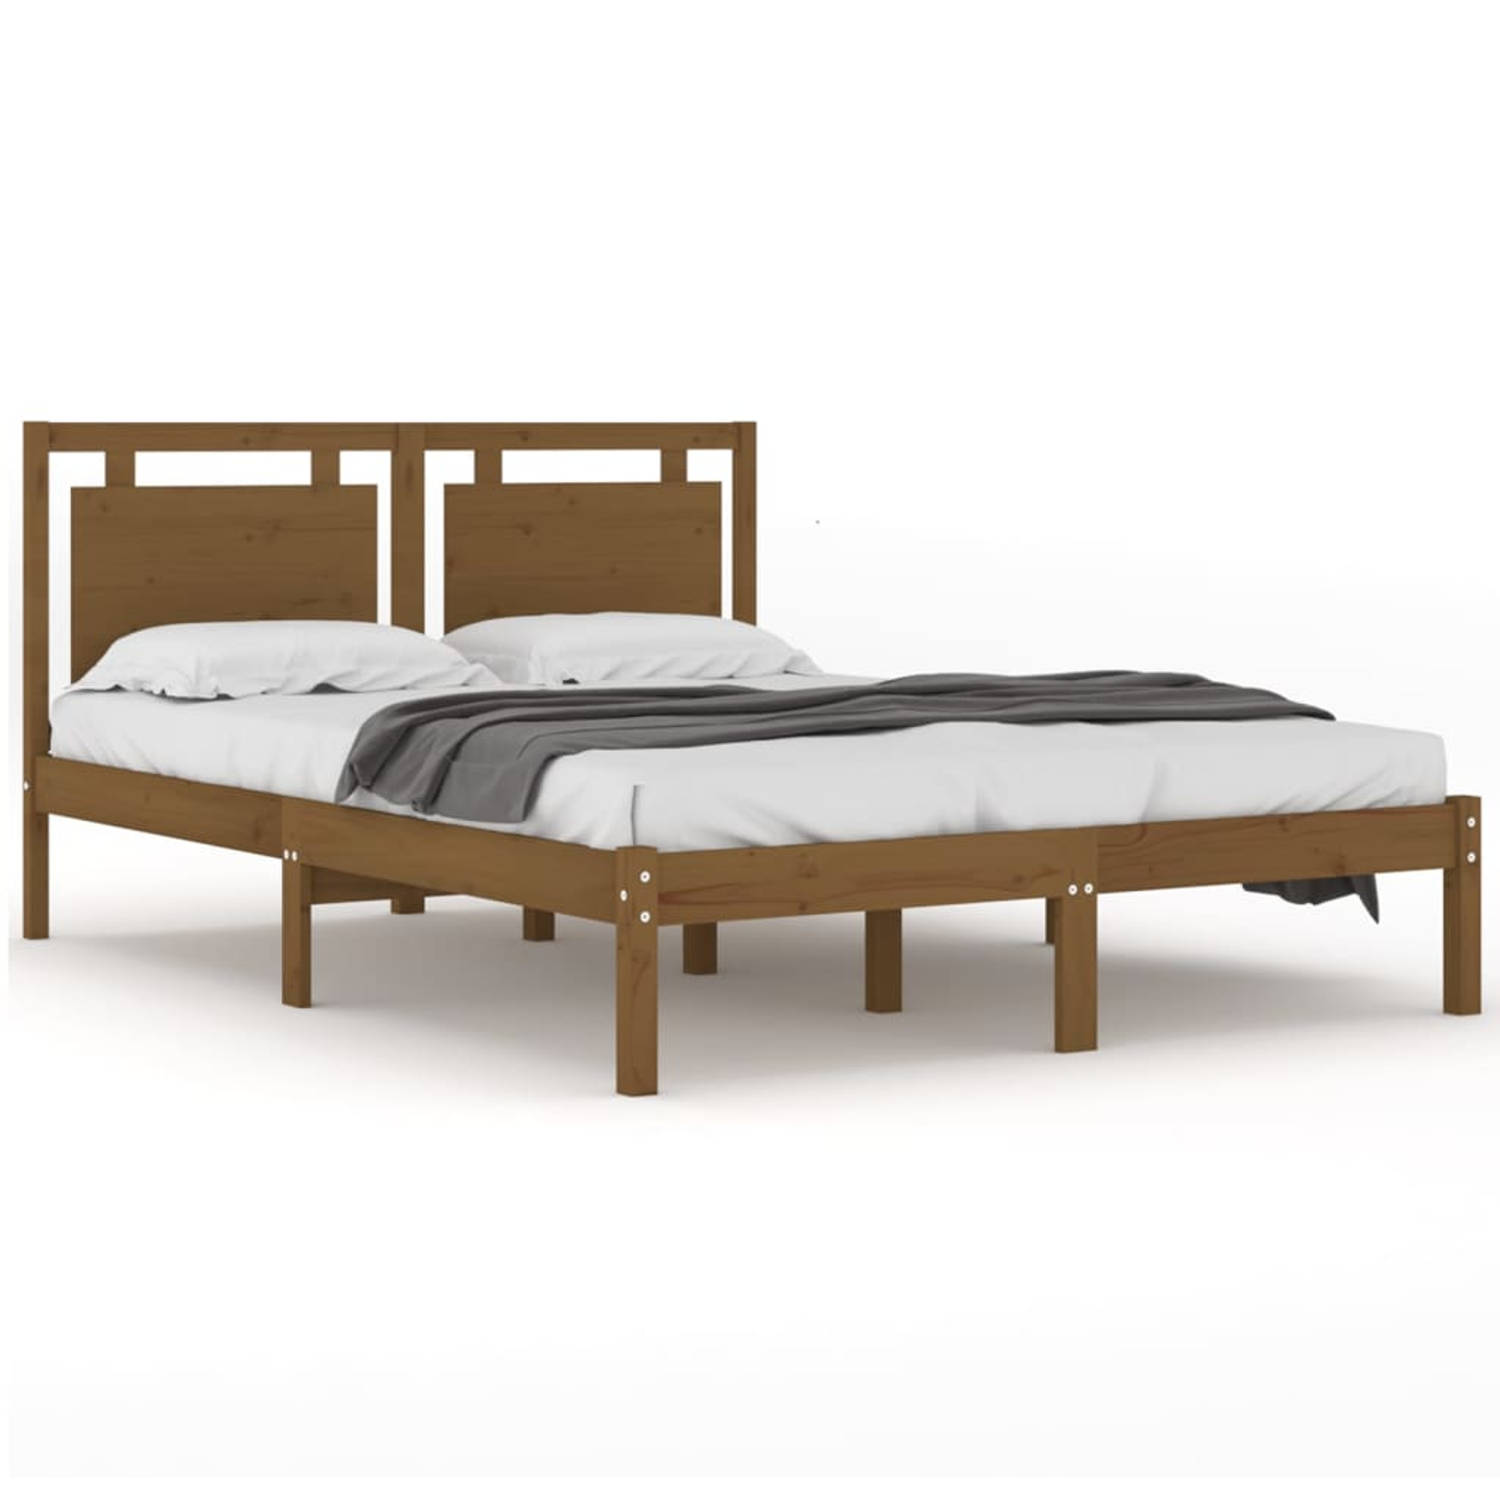 The Living Store Bedframe massief hout honingbruin 180x200 cm 6FT Super King - Bedframe - Bedframes - Tweepersoonsbed - Bed - Bedombouw - Dubbel Bed - Frame - Bed Frame - Ledikant